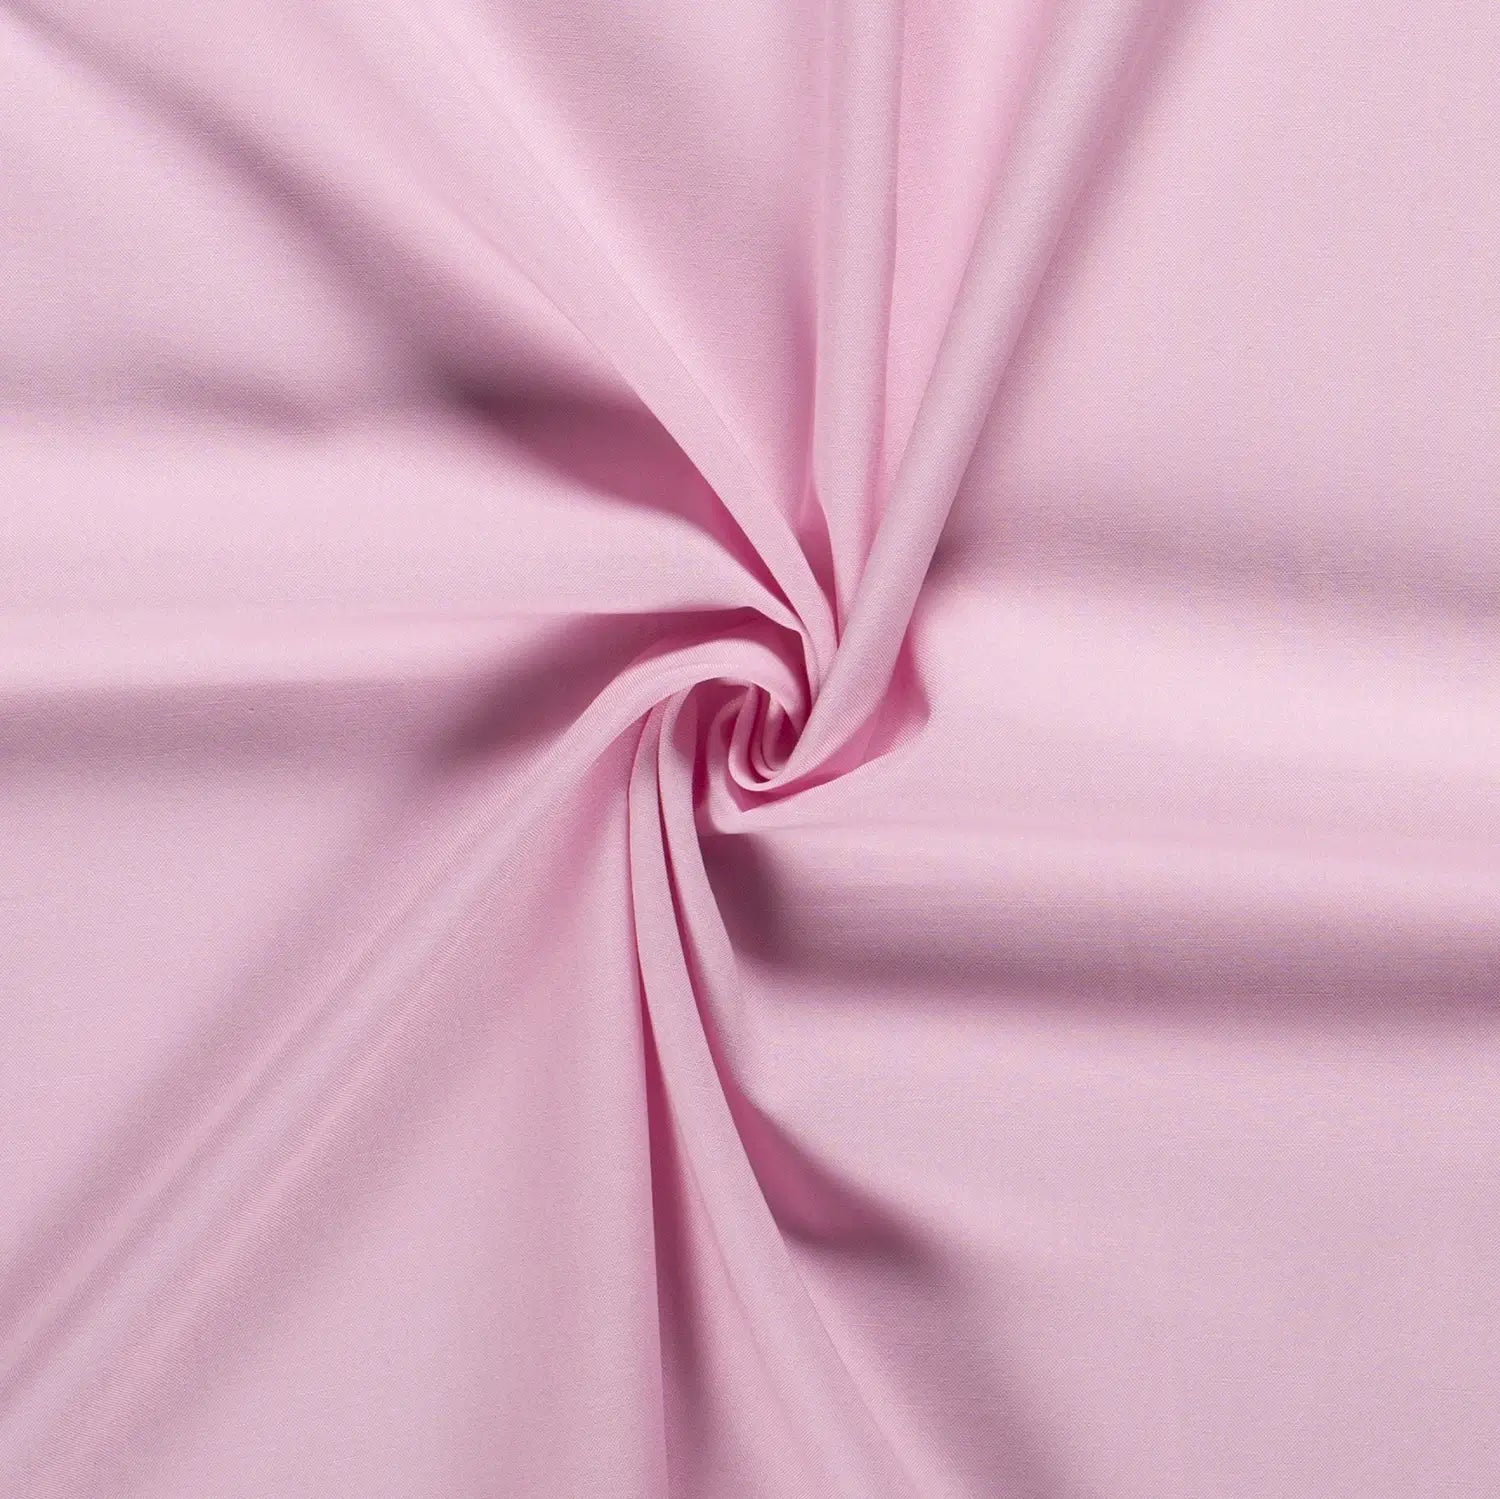 Detailansicht eines pink farbenden Vorhangstoffs in dem in der Mitte eine gefaltete Spirale zu sehen ist